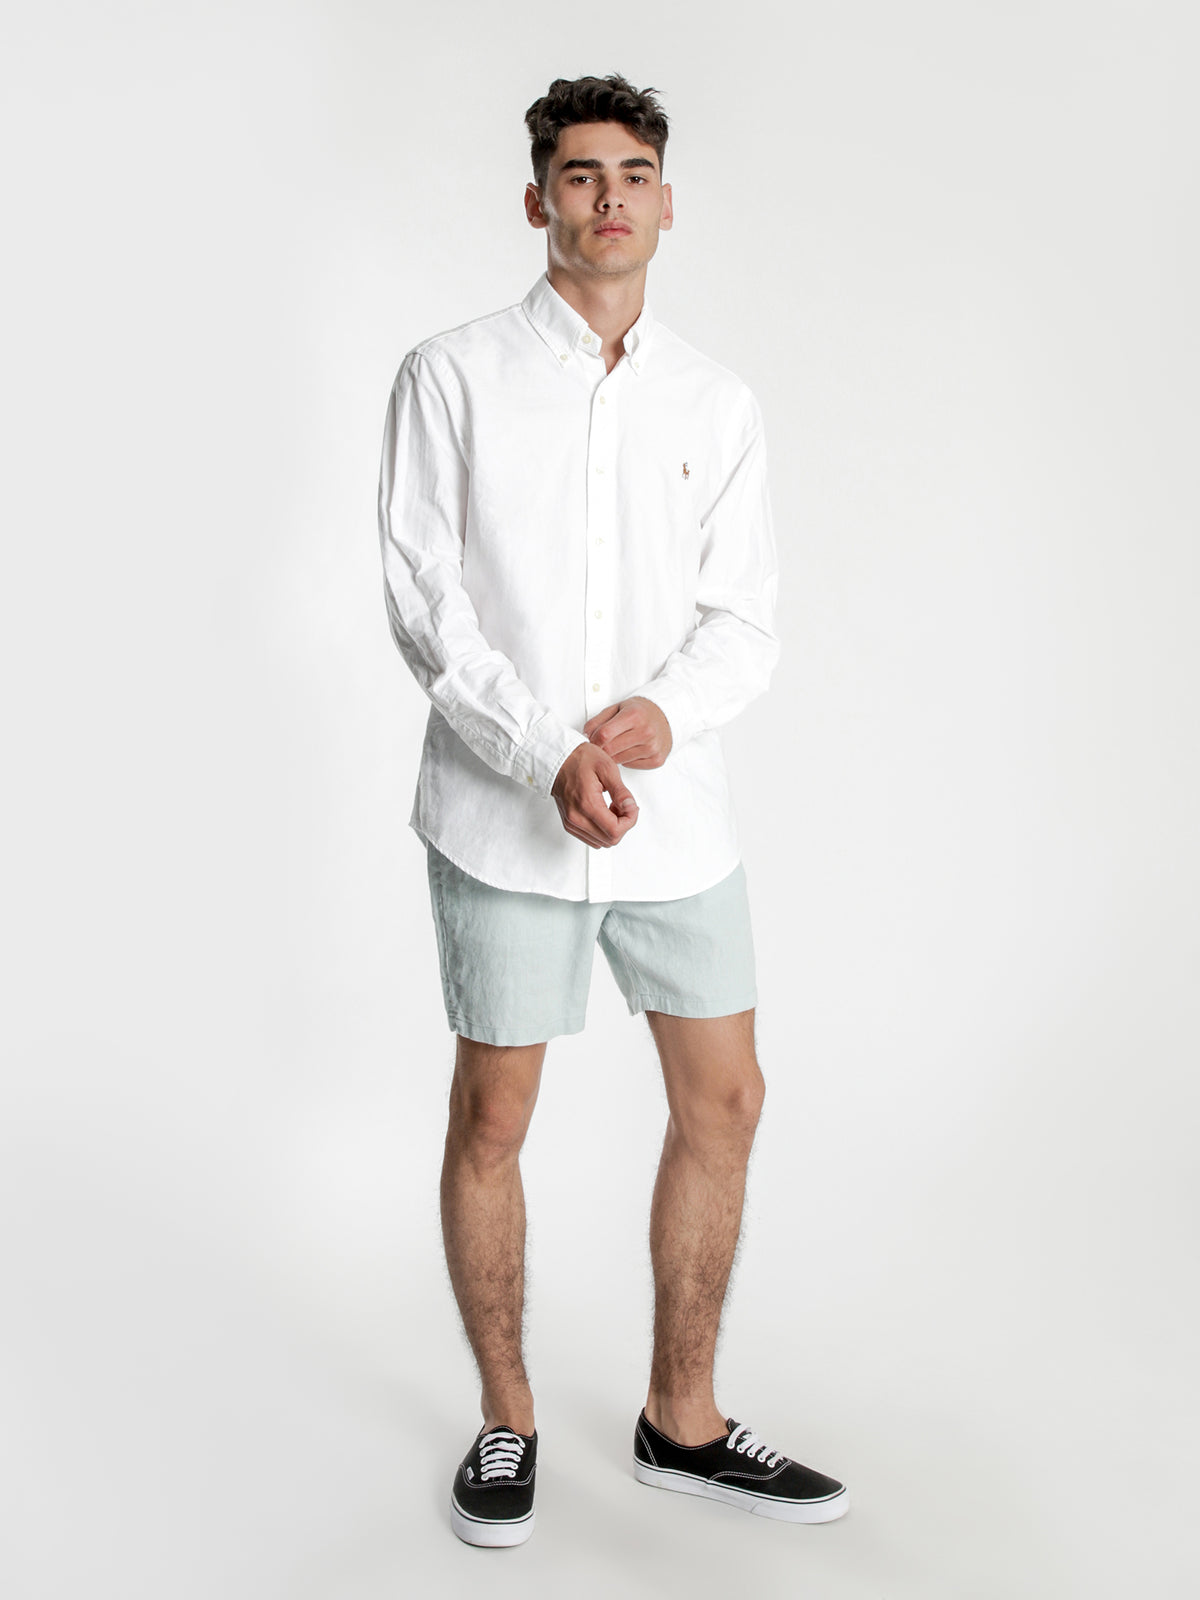 Noosa Linen Shorts in Seafoam